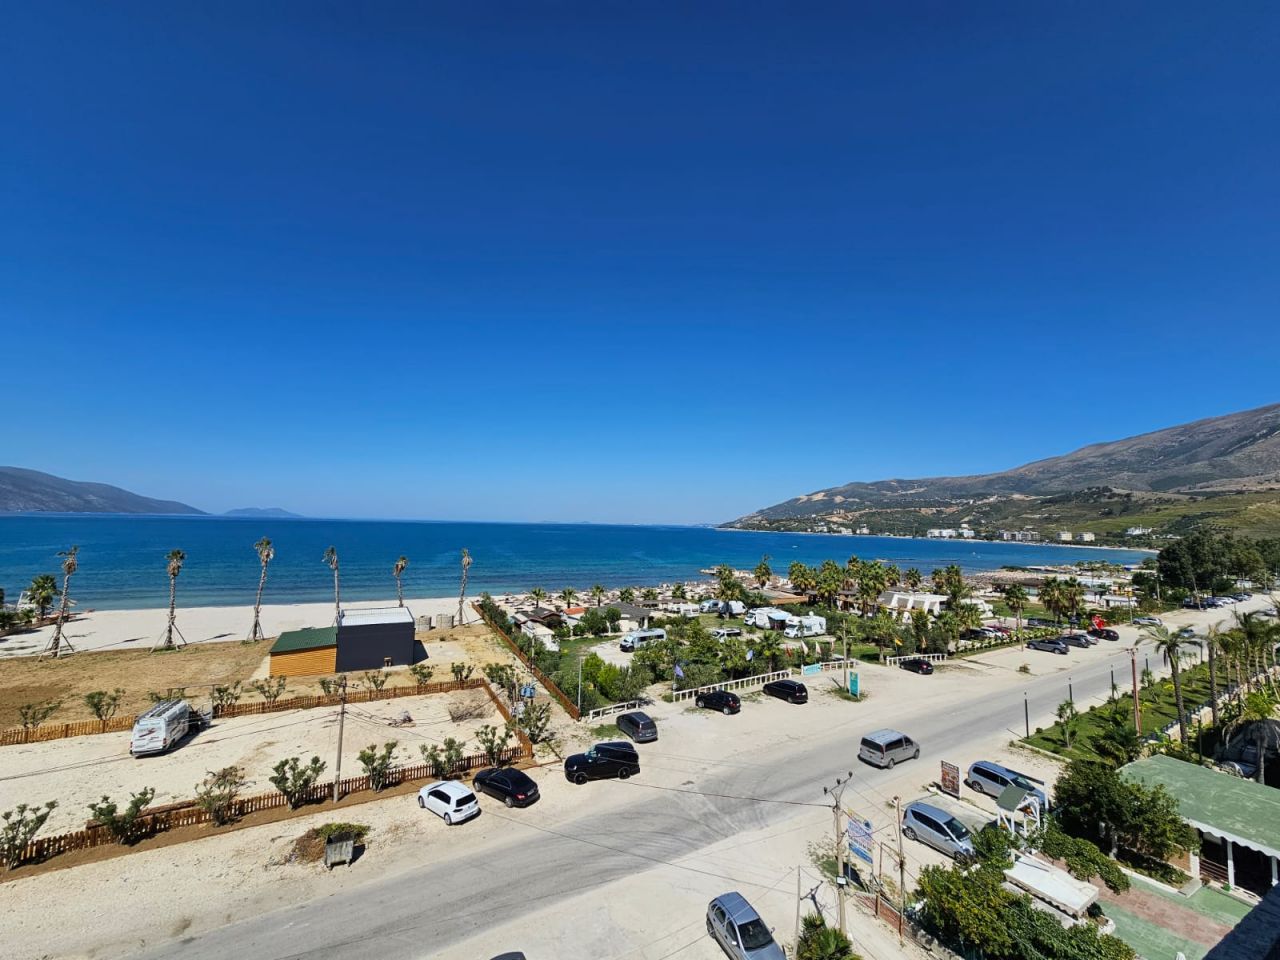  Mieszkanie Na Sprzedaż We Wlorze W Albanii, Położone W Panoramicznej Okolicy, W Pobliżu Plaży